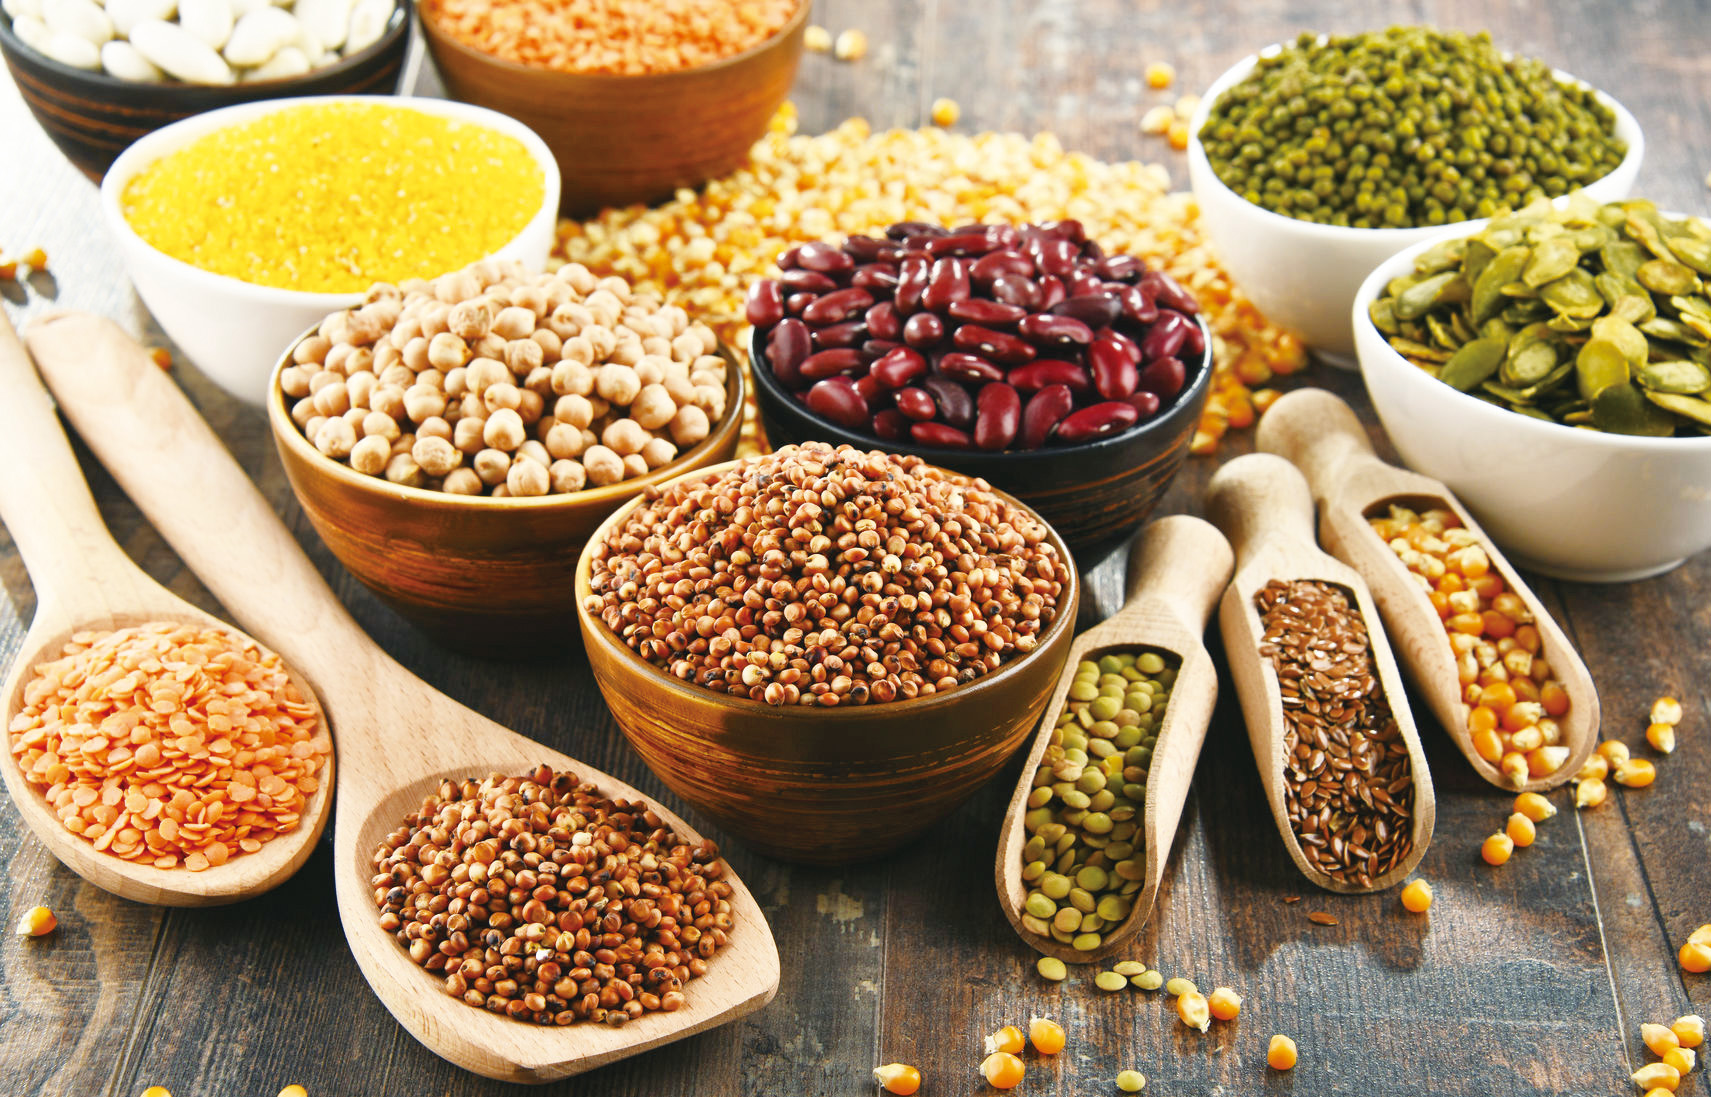 辟穀，源自於道家養生的「不食五穀」，是古人養生方式之一。